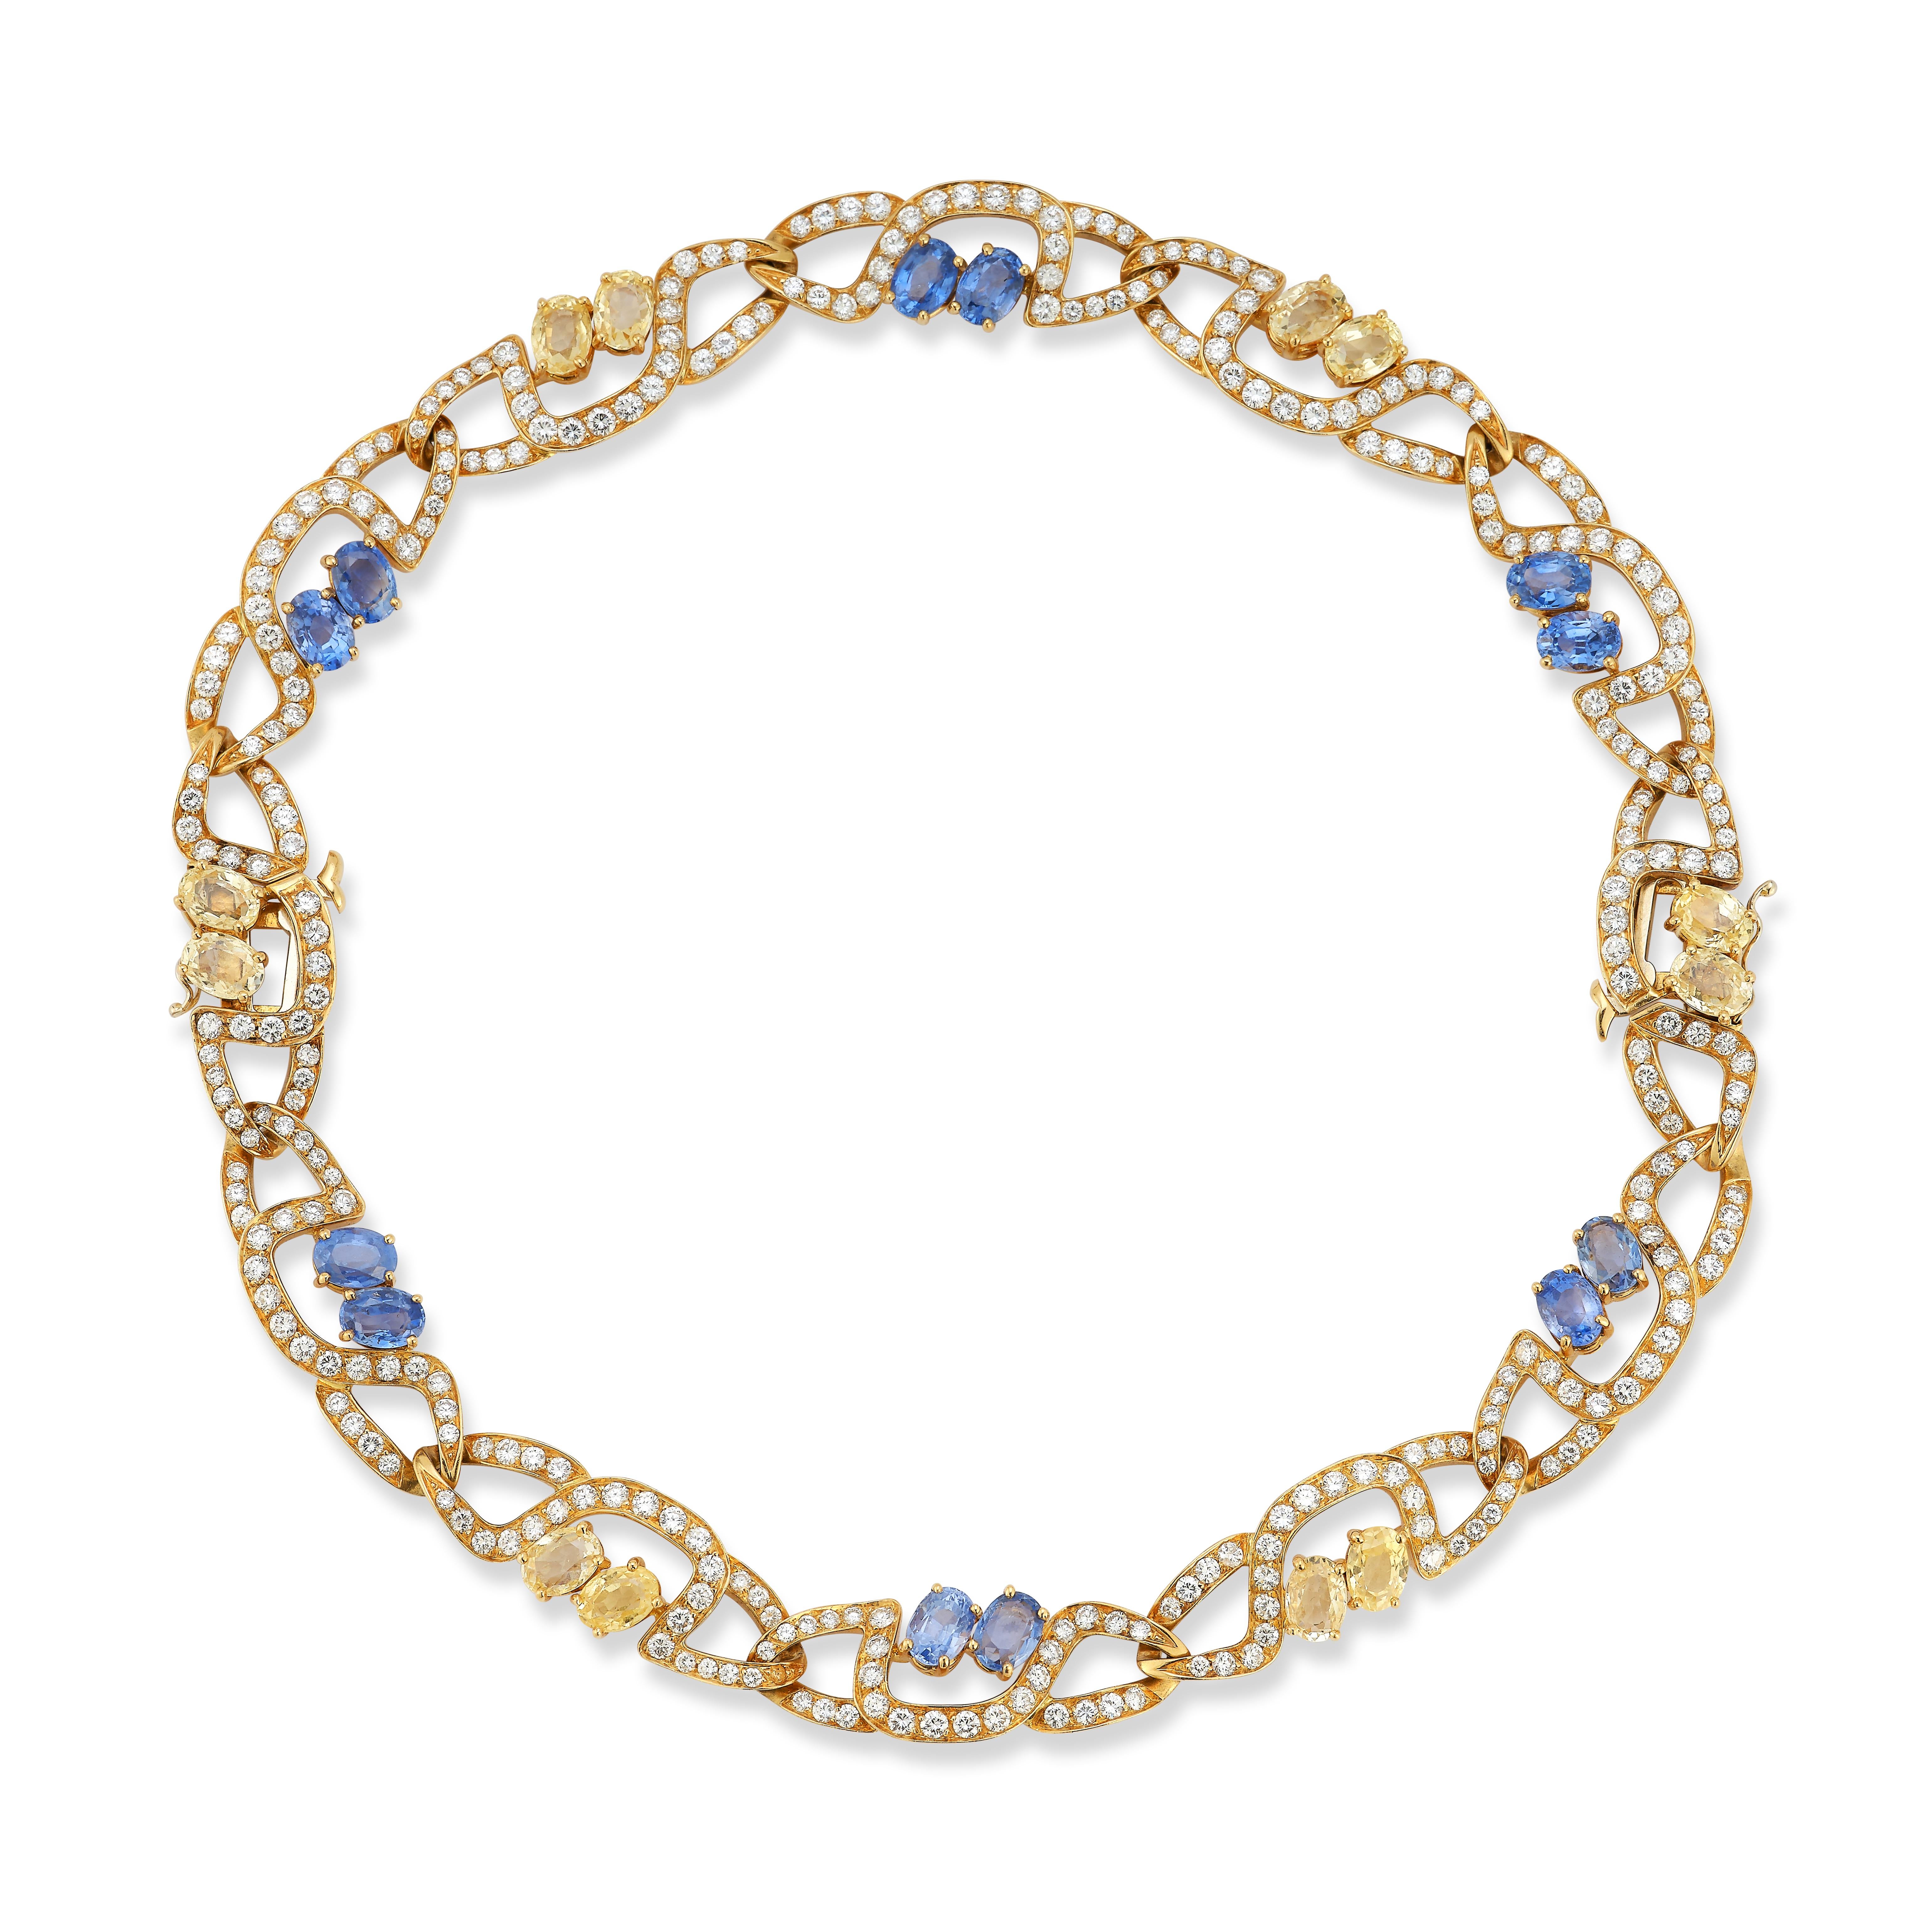 Massoni Saphir & Diamant Halskette

Kann in zwei Armbänder umgewandelt werden

gliederkette aus 18 Karat Gold, besetzt mit 312 Diamanten im Rundschliff und 24 blauen und gelben Saphiren

312 Diamanten im Rundschliff, ungefähres Gesamtgewicht von